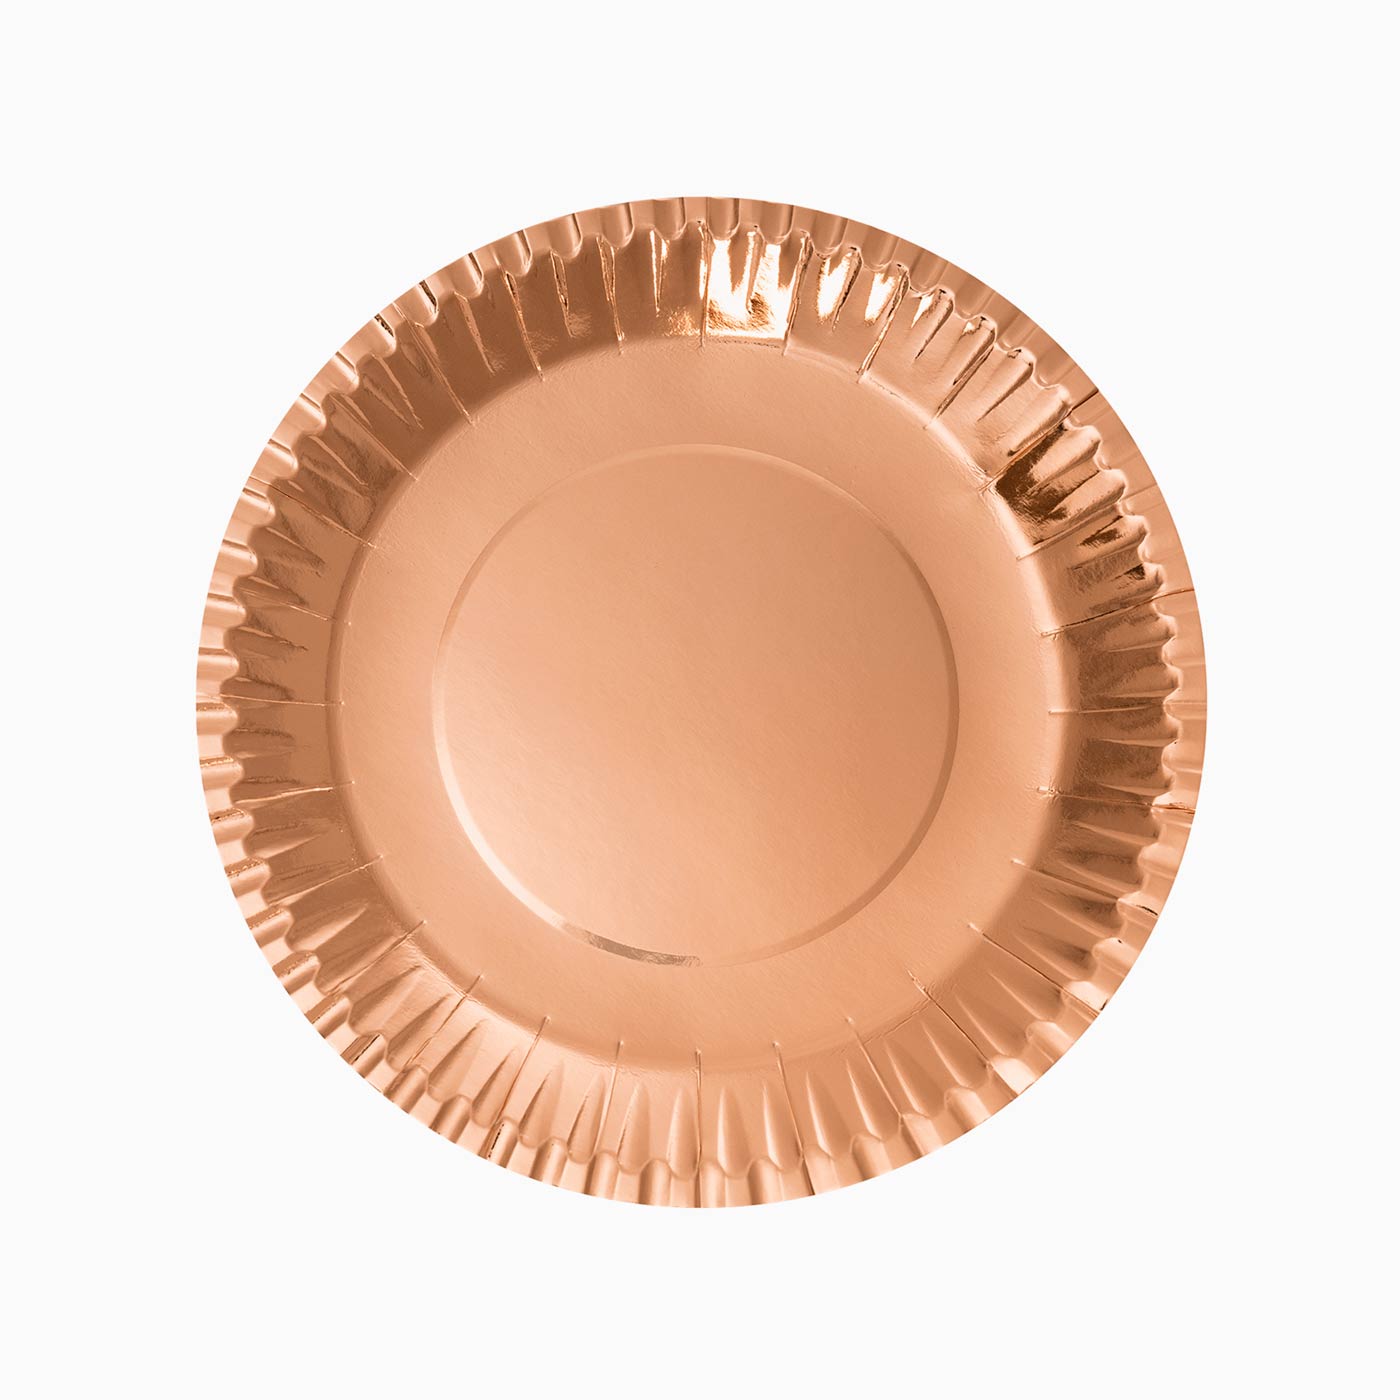 Cartone piatto in metallo Ø 20 cm rosa oro